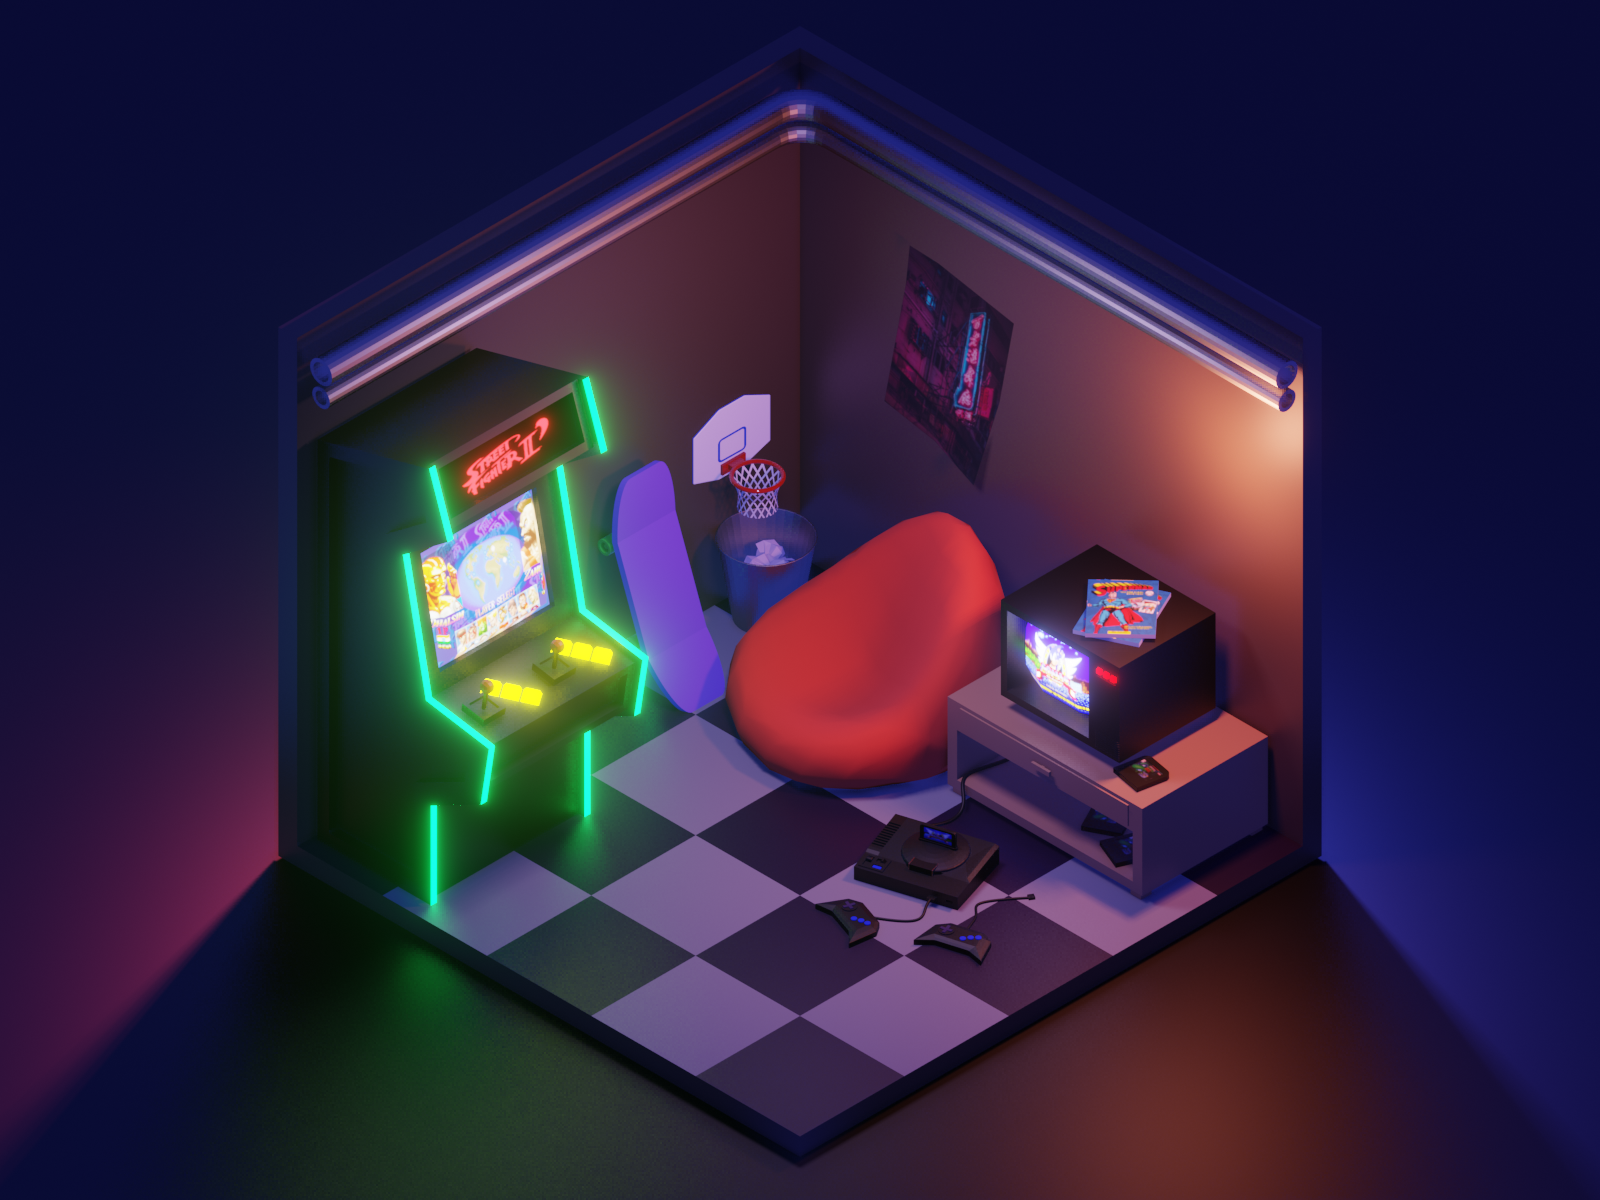 Gaming oldschool room by Alexander Baleev on Dribbble